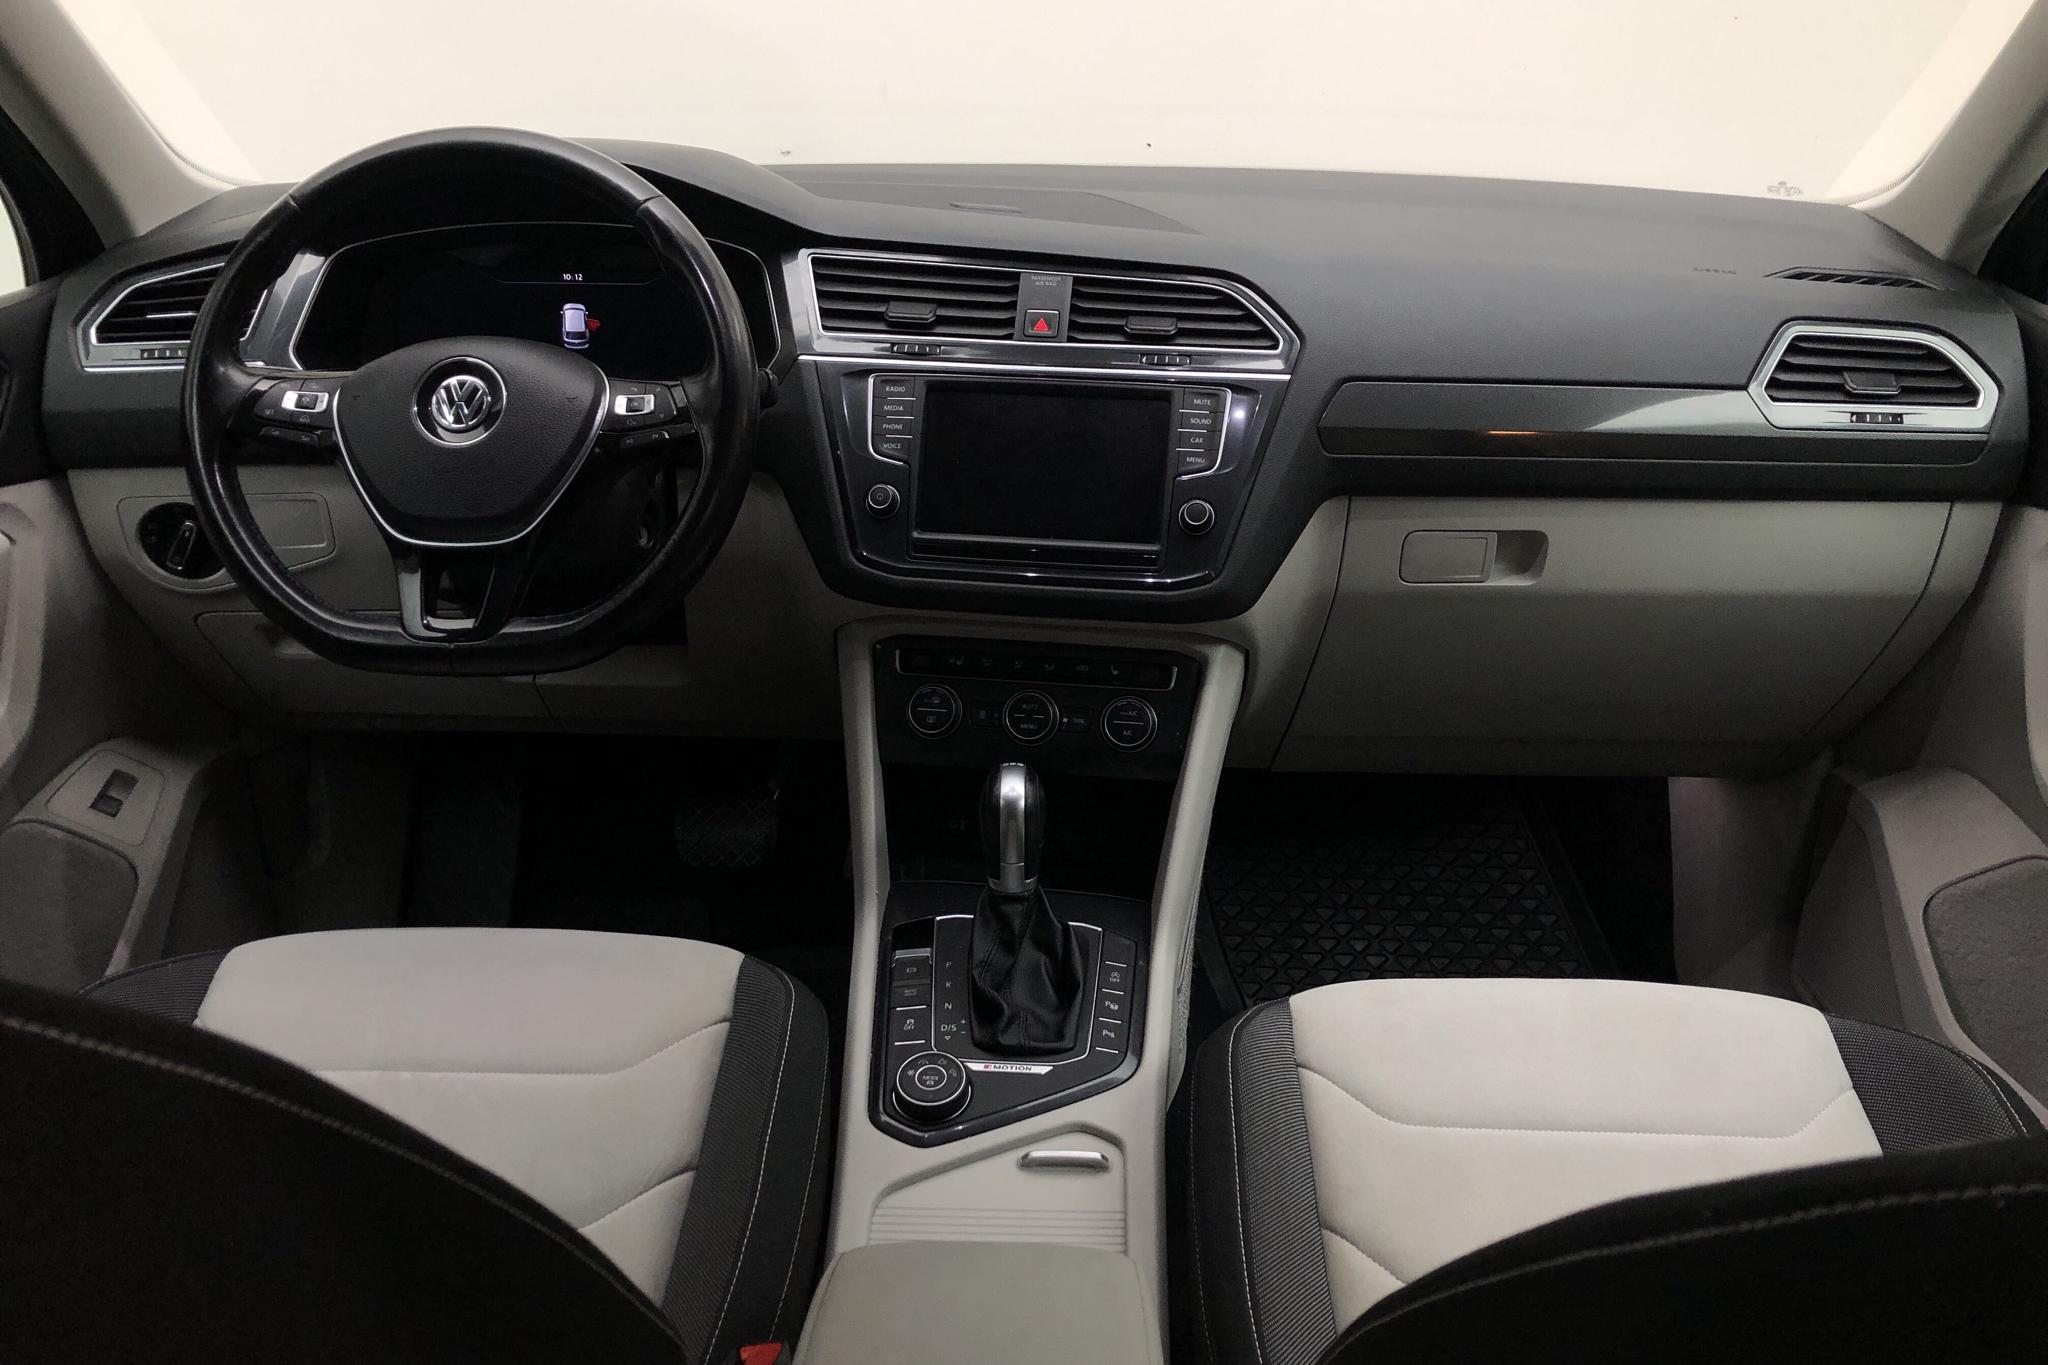 VW Tiguan 2.0 TDI 4MOTION (190hk) - 108 730 km - Automatic - silver - 2017